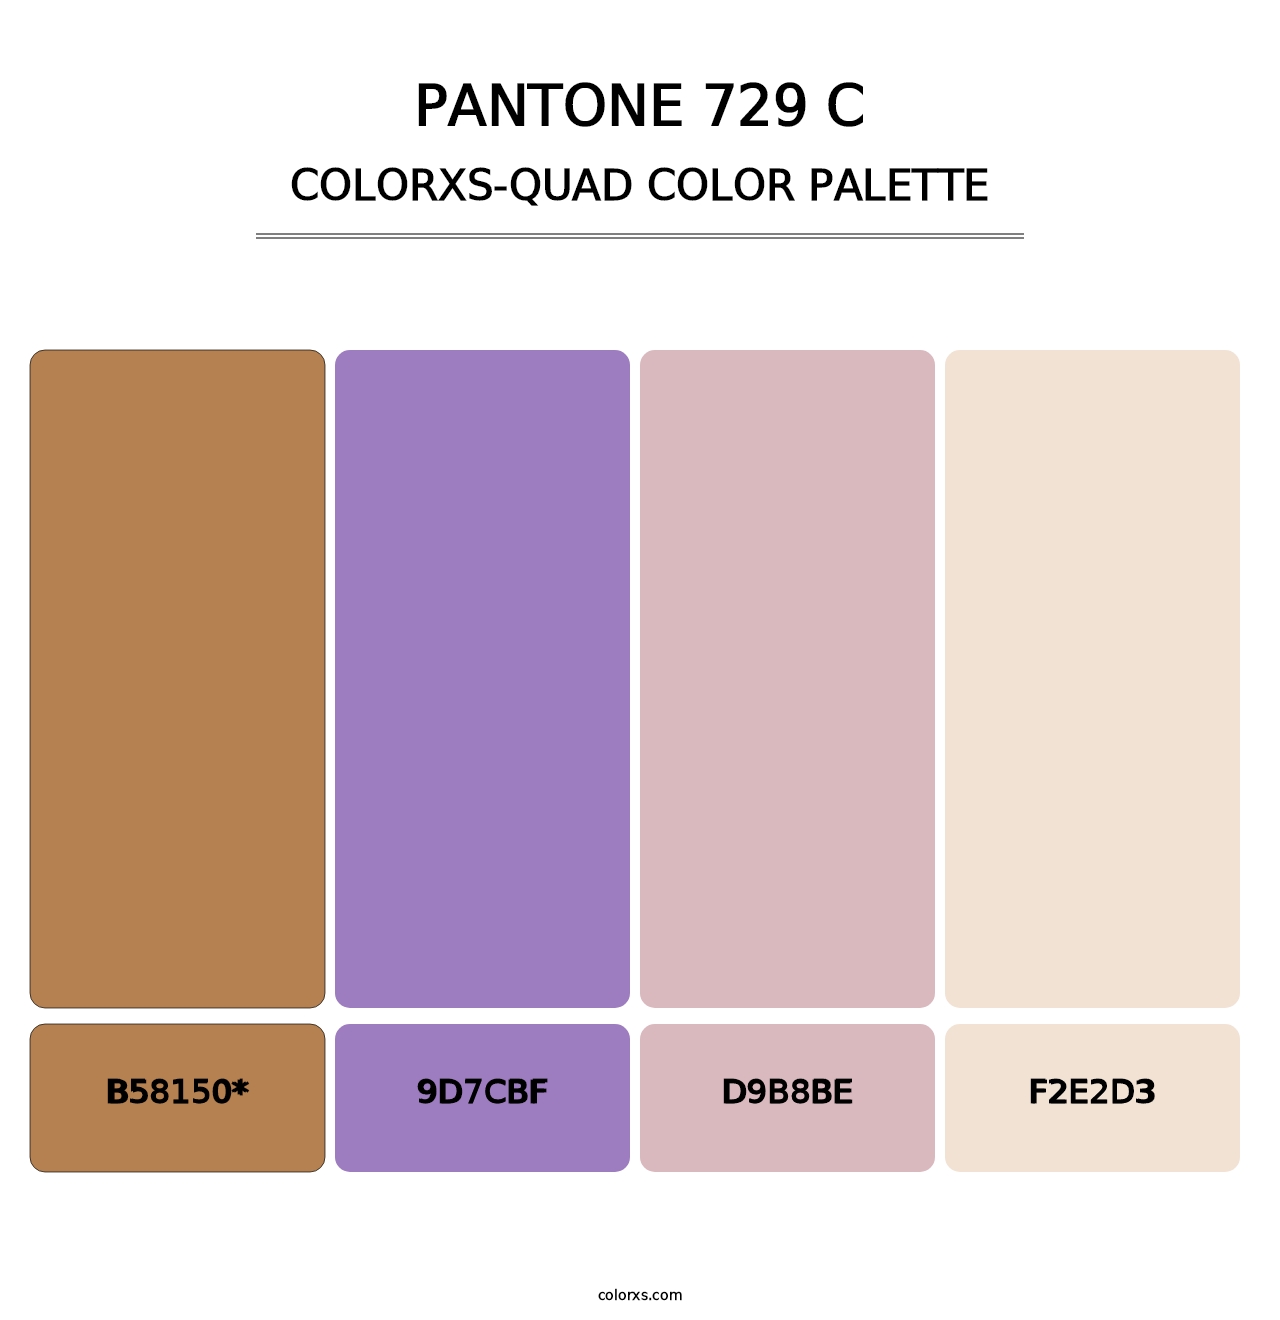 PANTONE 729 C - Colorxs Quad Palette